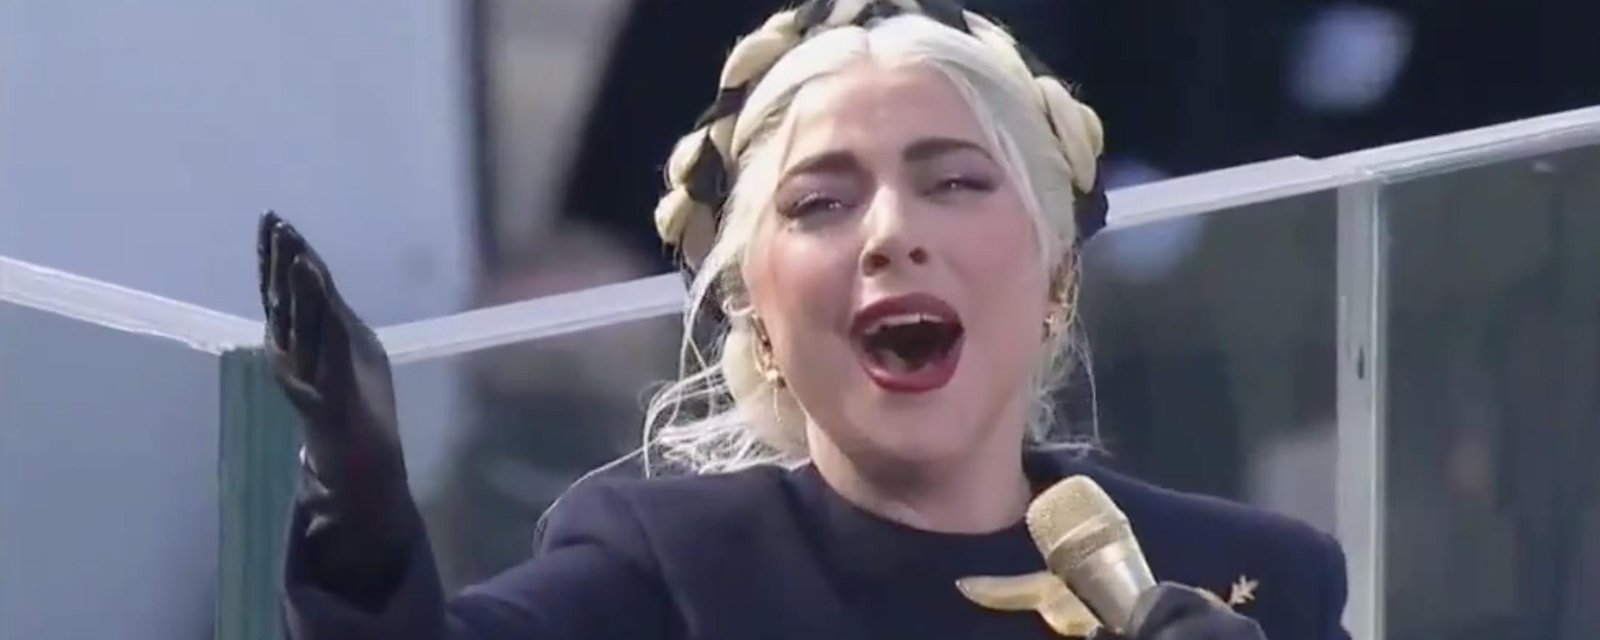 À VOIR: Lady Gaga vole la vedette avec une performance magistrale à l'inauguration de Joe Biden